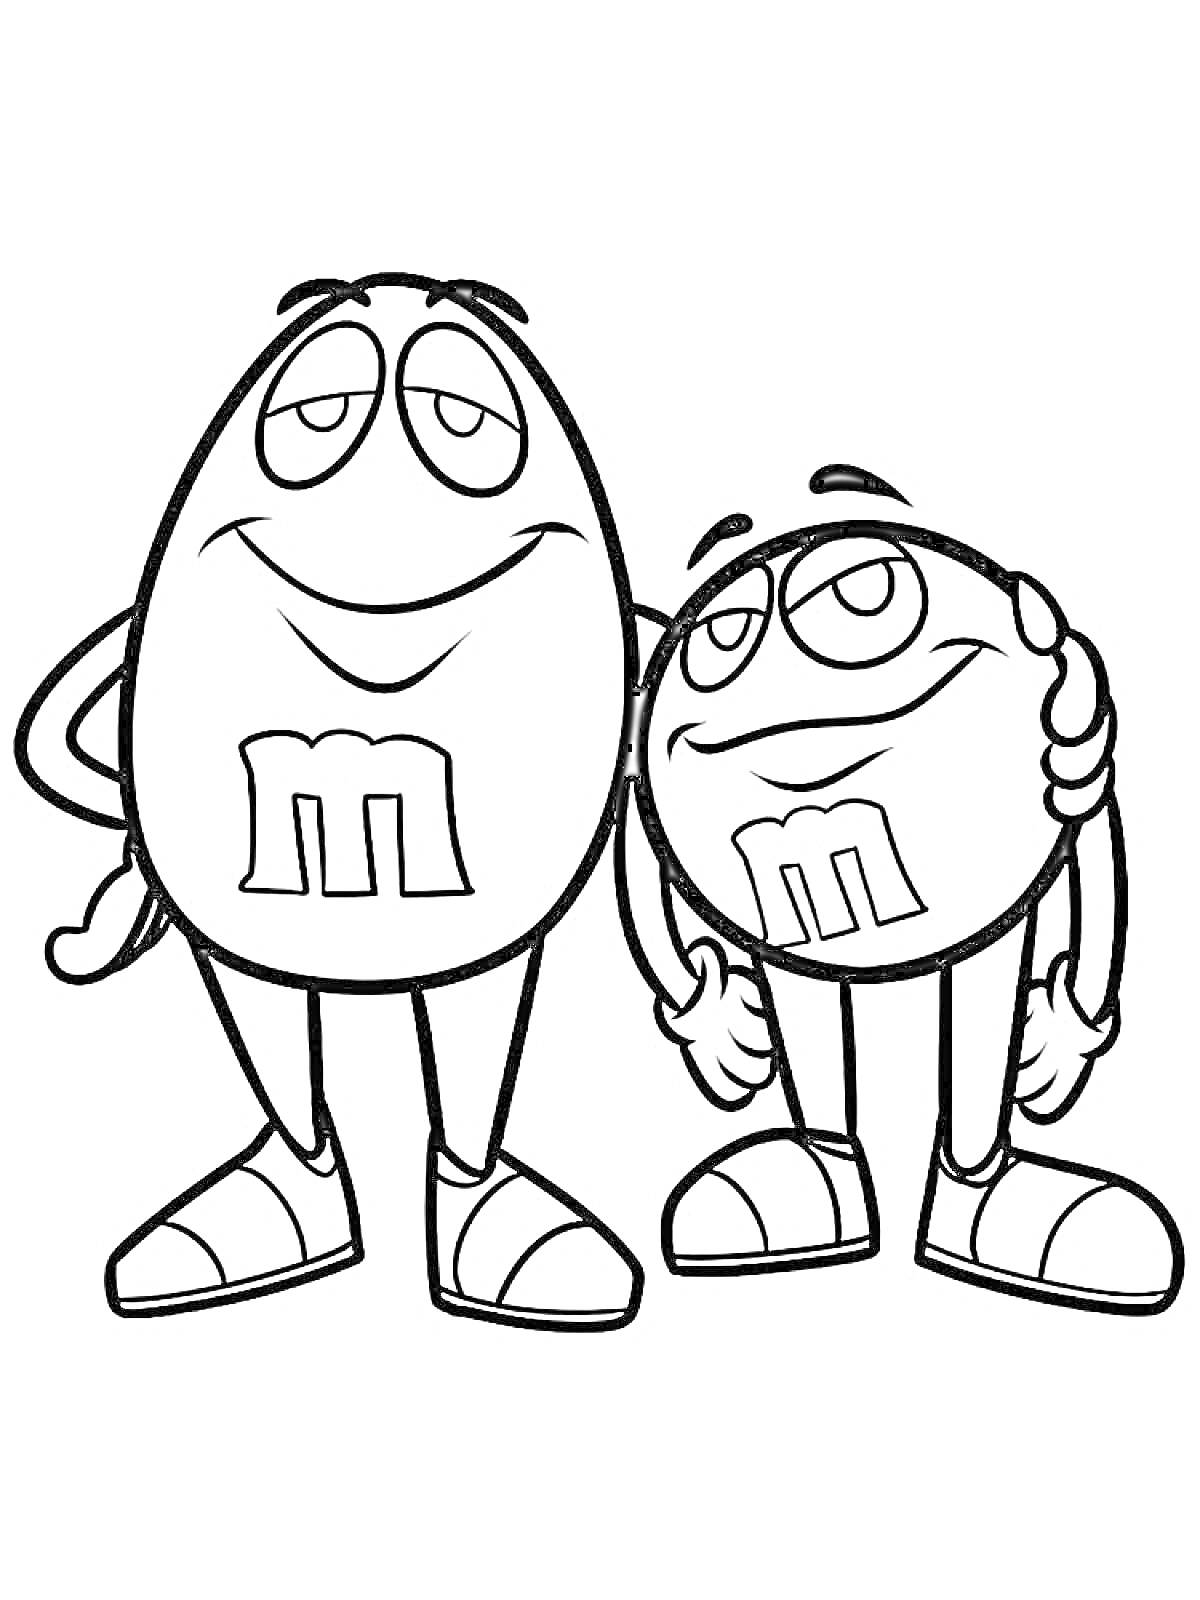 Два M&M's персонажа, обнимающиеся и улыбающиеся